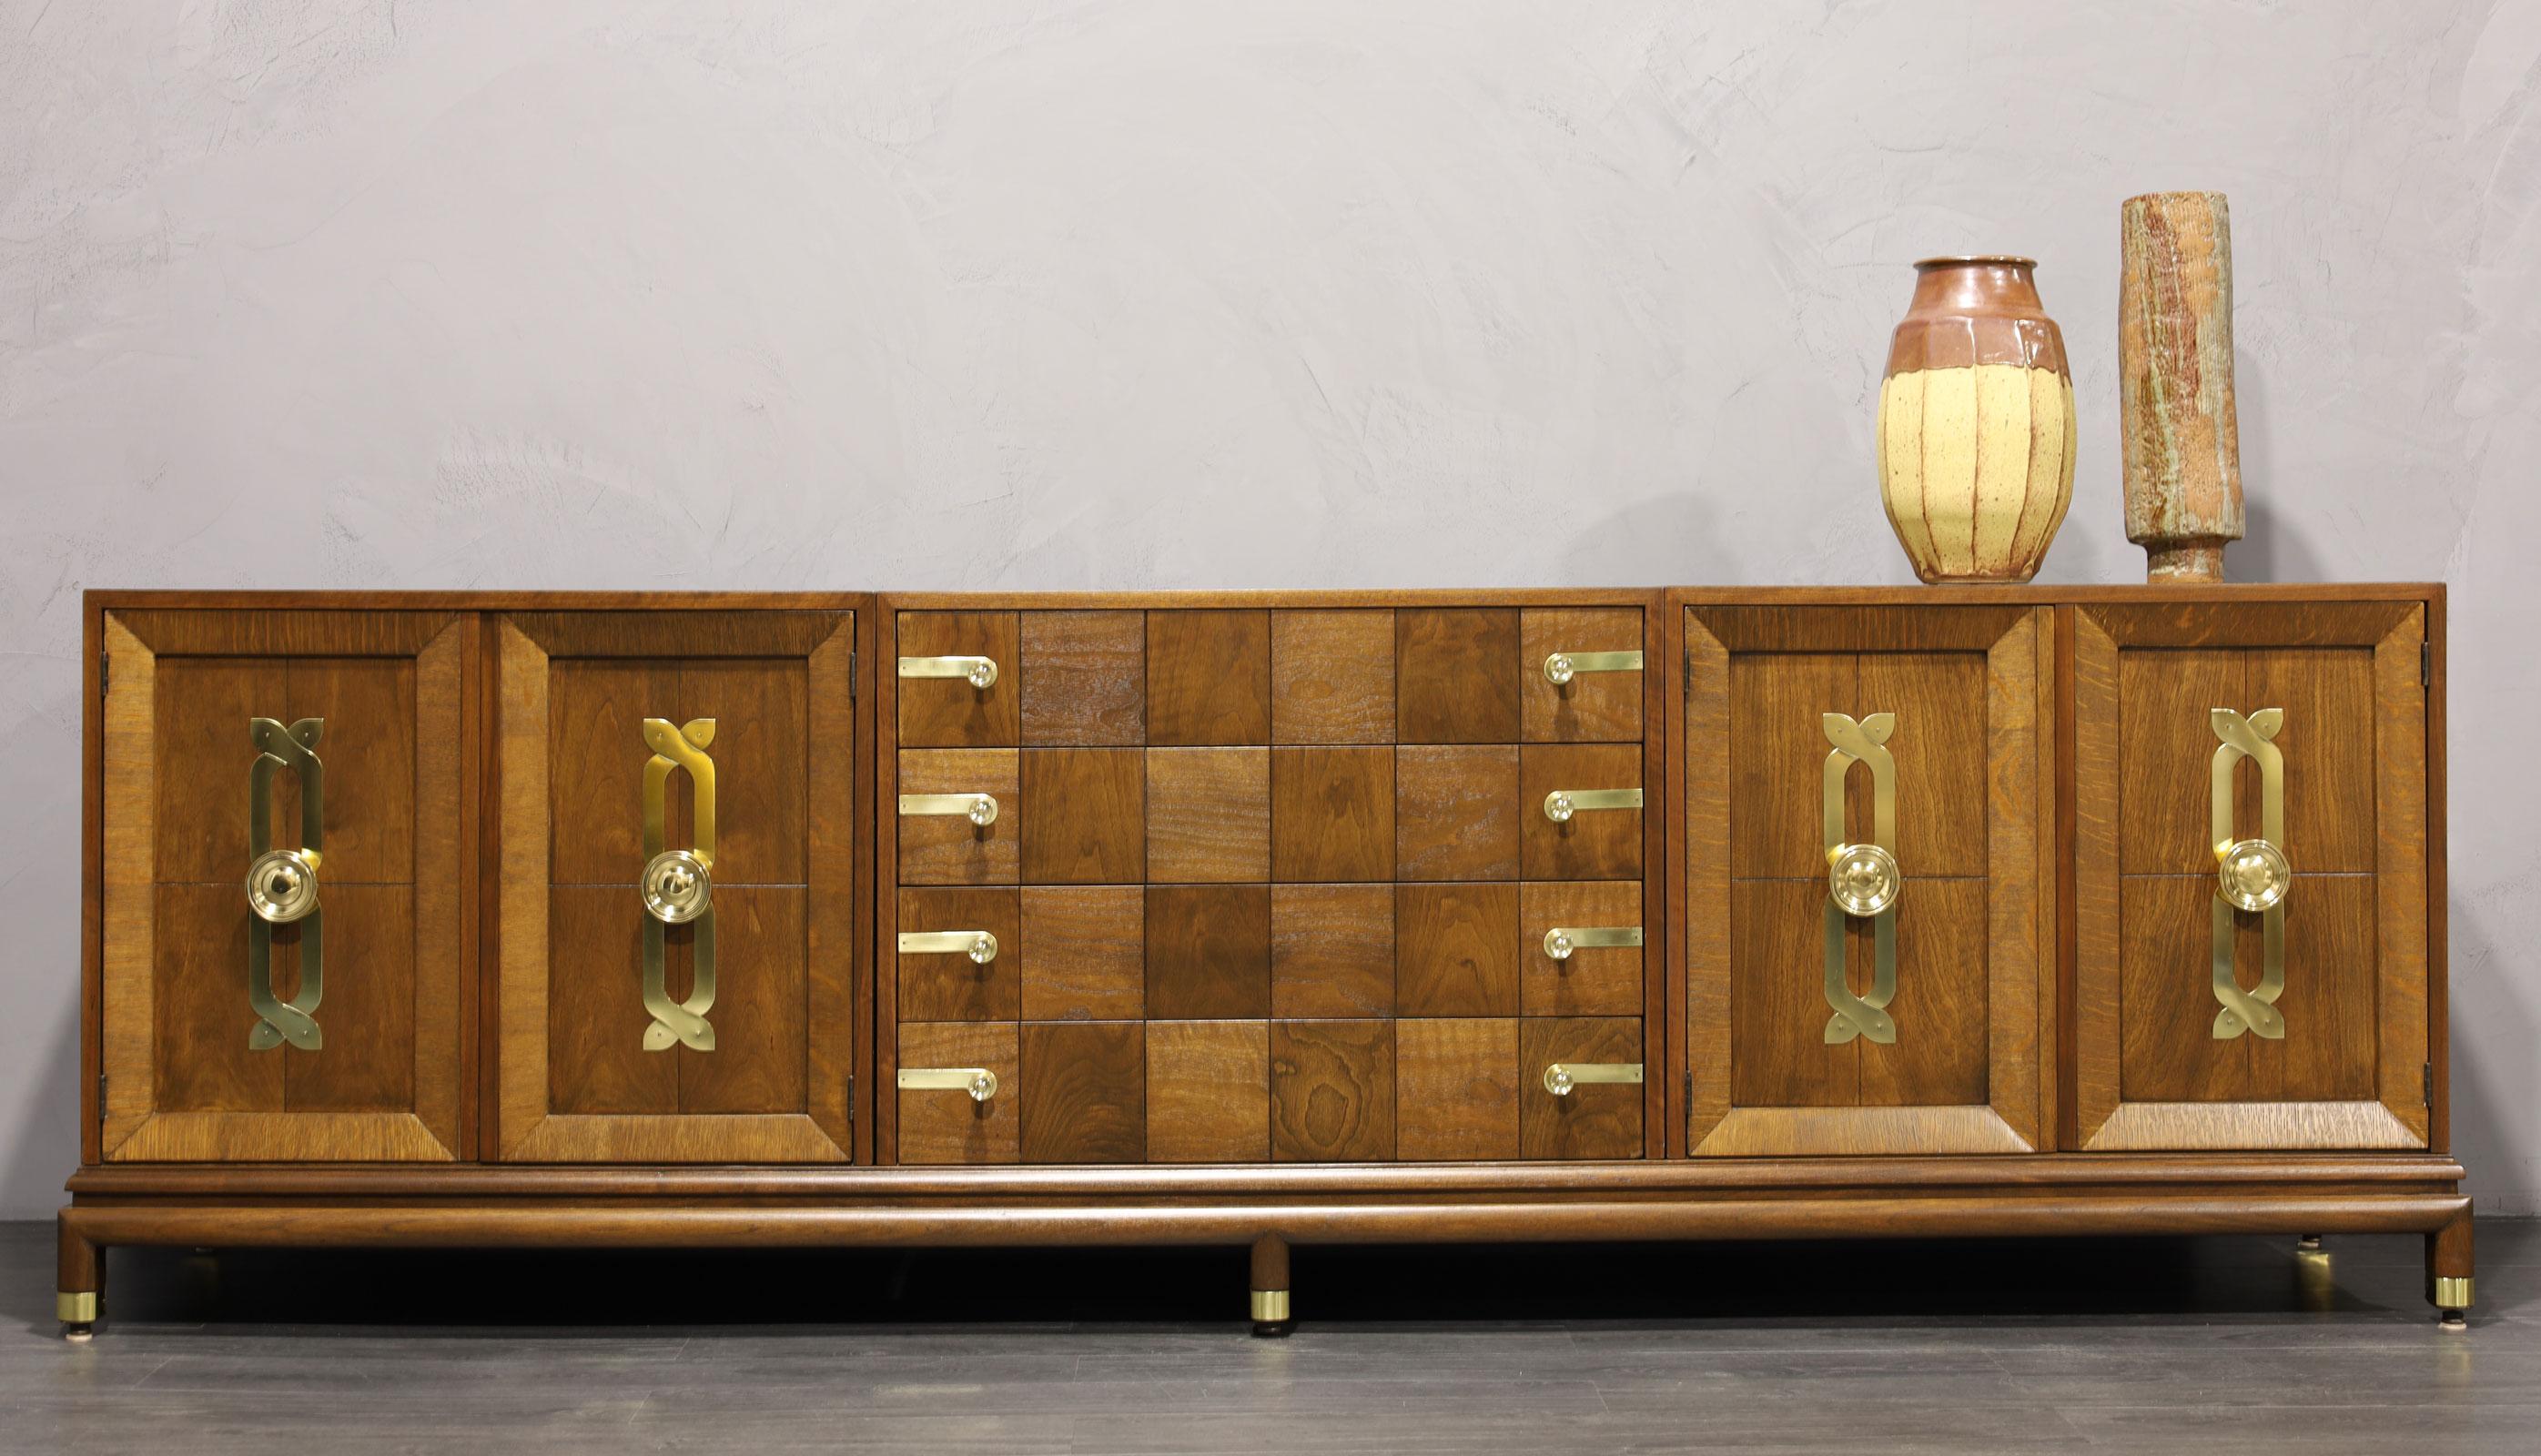 Wir haben dieses schöne Sideboard von Renzo Rutili für John Stuart/Johnson Furniture Company vollständig restauriert. Das Sideboard besteht aus drei separaten Schränken, die auf einem einzigen Sockel ruhen. Schöne Messingbeschläge überall. Das